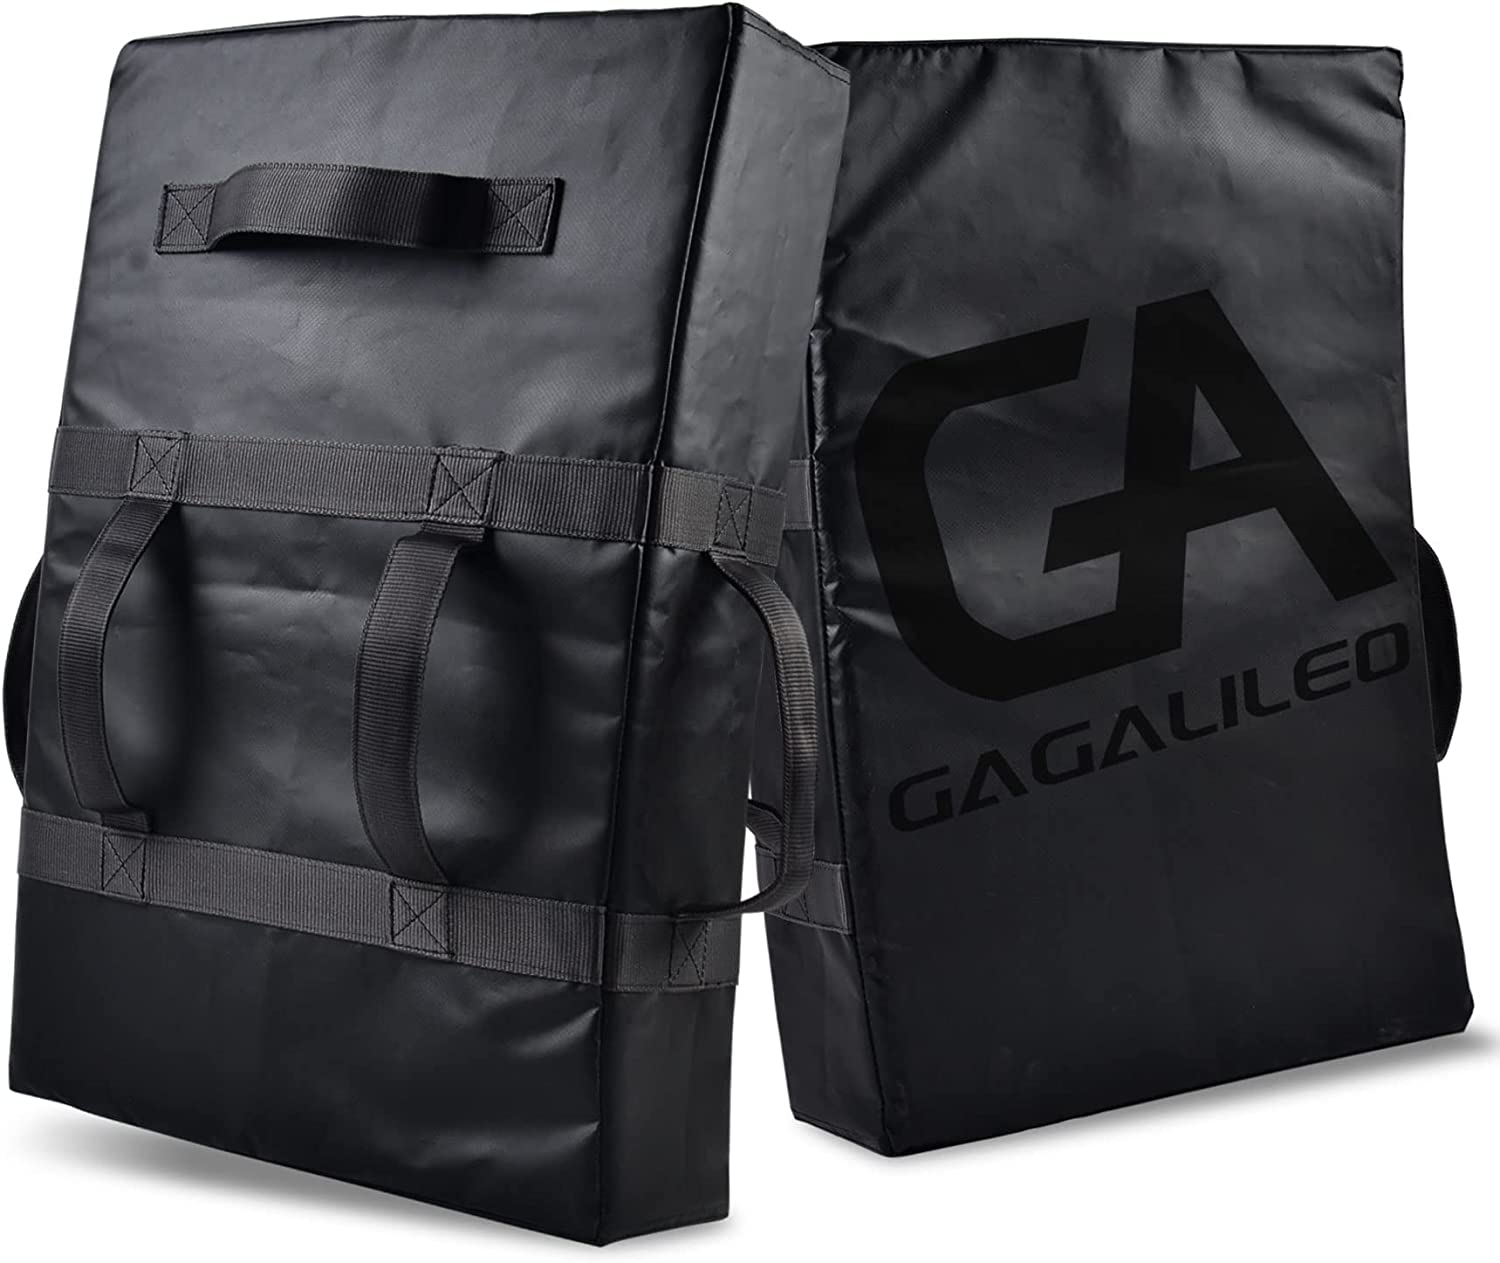 Coussinet de blocage Gagalileo 24x16 pouces/cuir synthétique durable